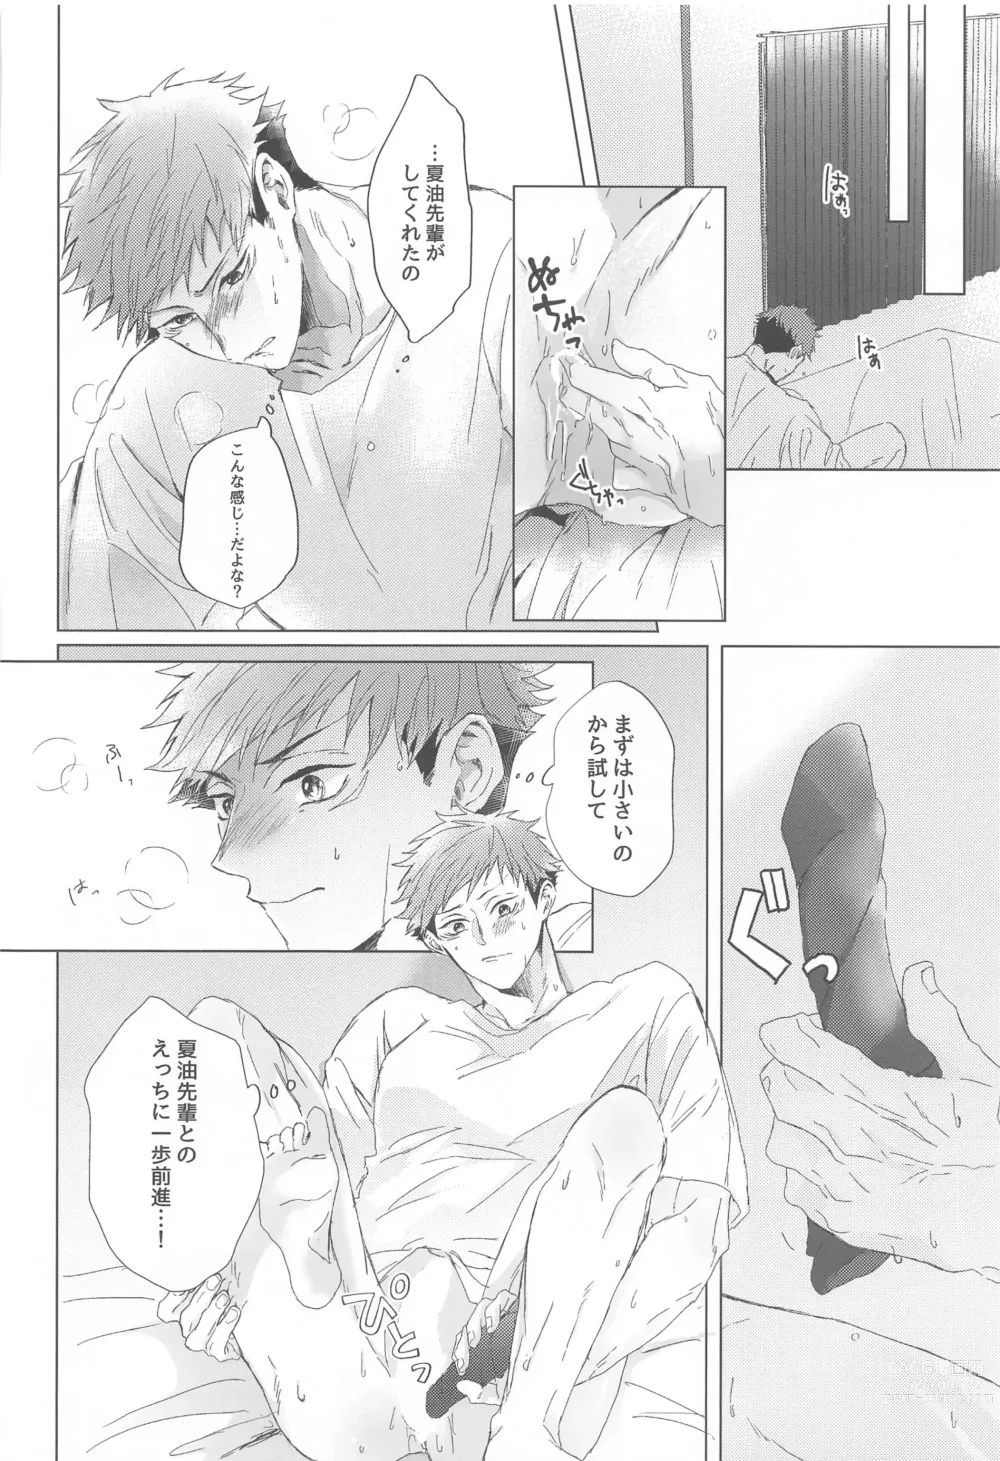 Page 13 of doujinshi Senpai, Anone.